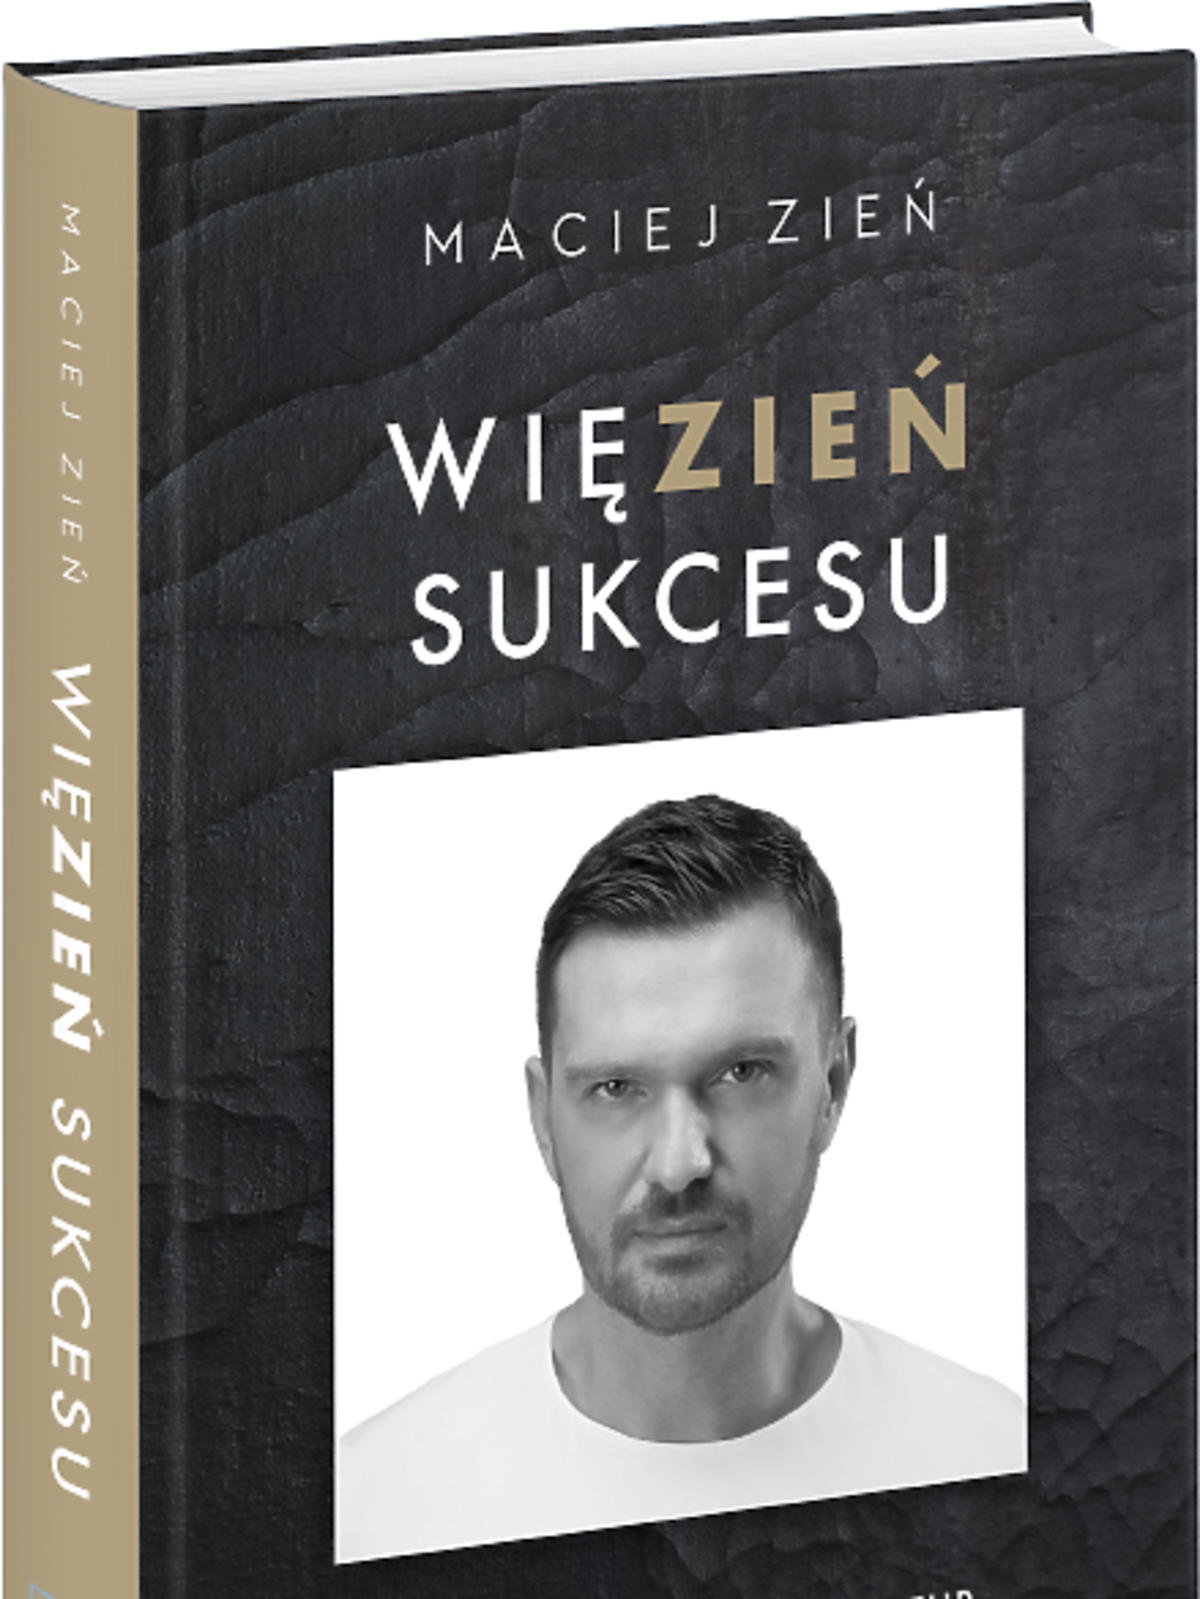 Maciej Zień, WięZIEŃ sukcesu